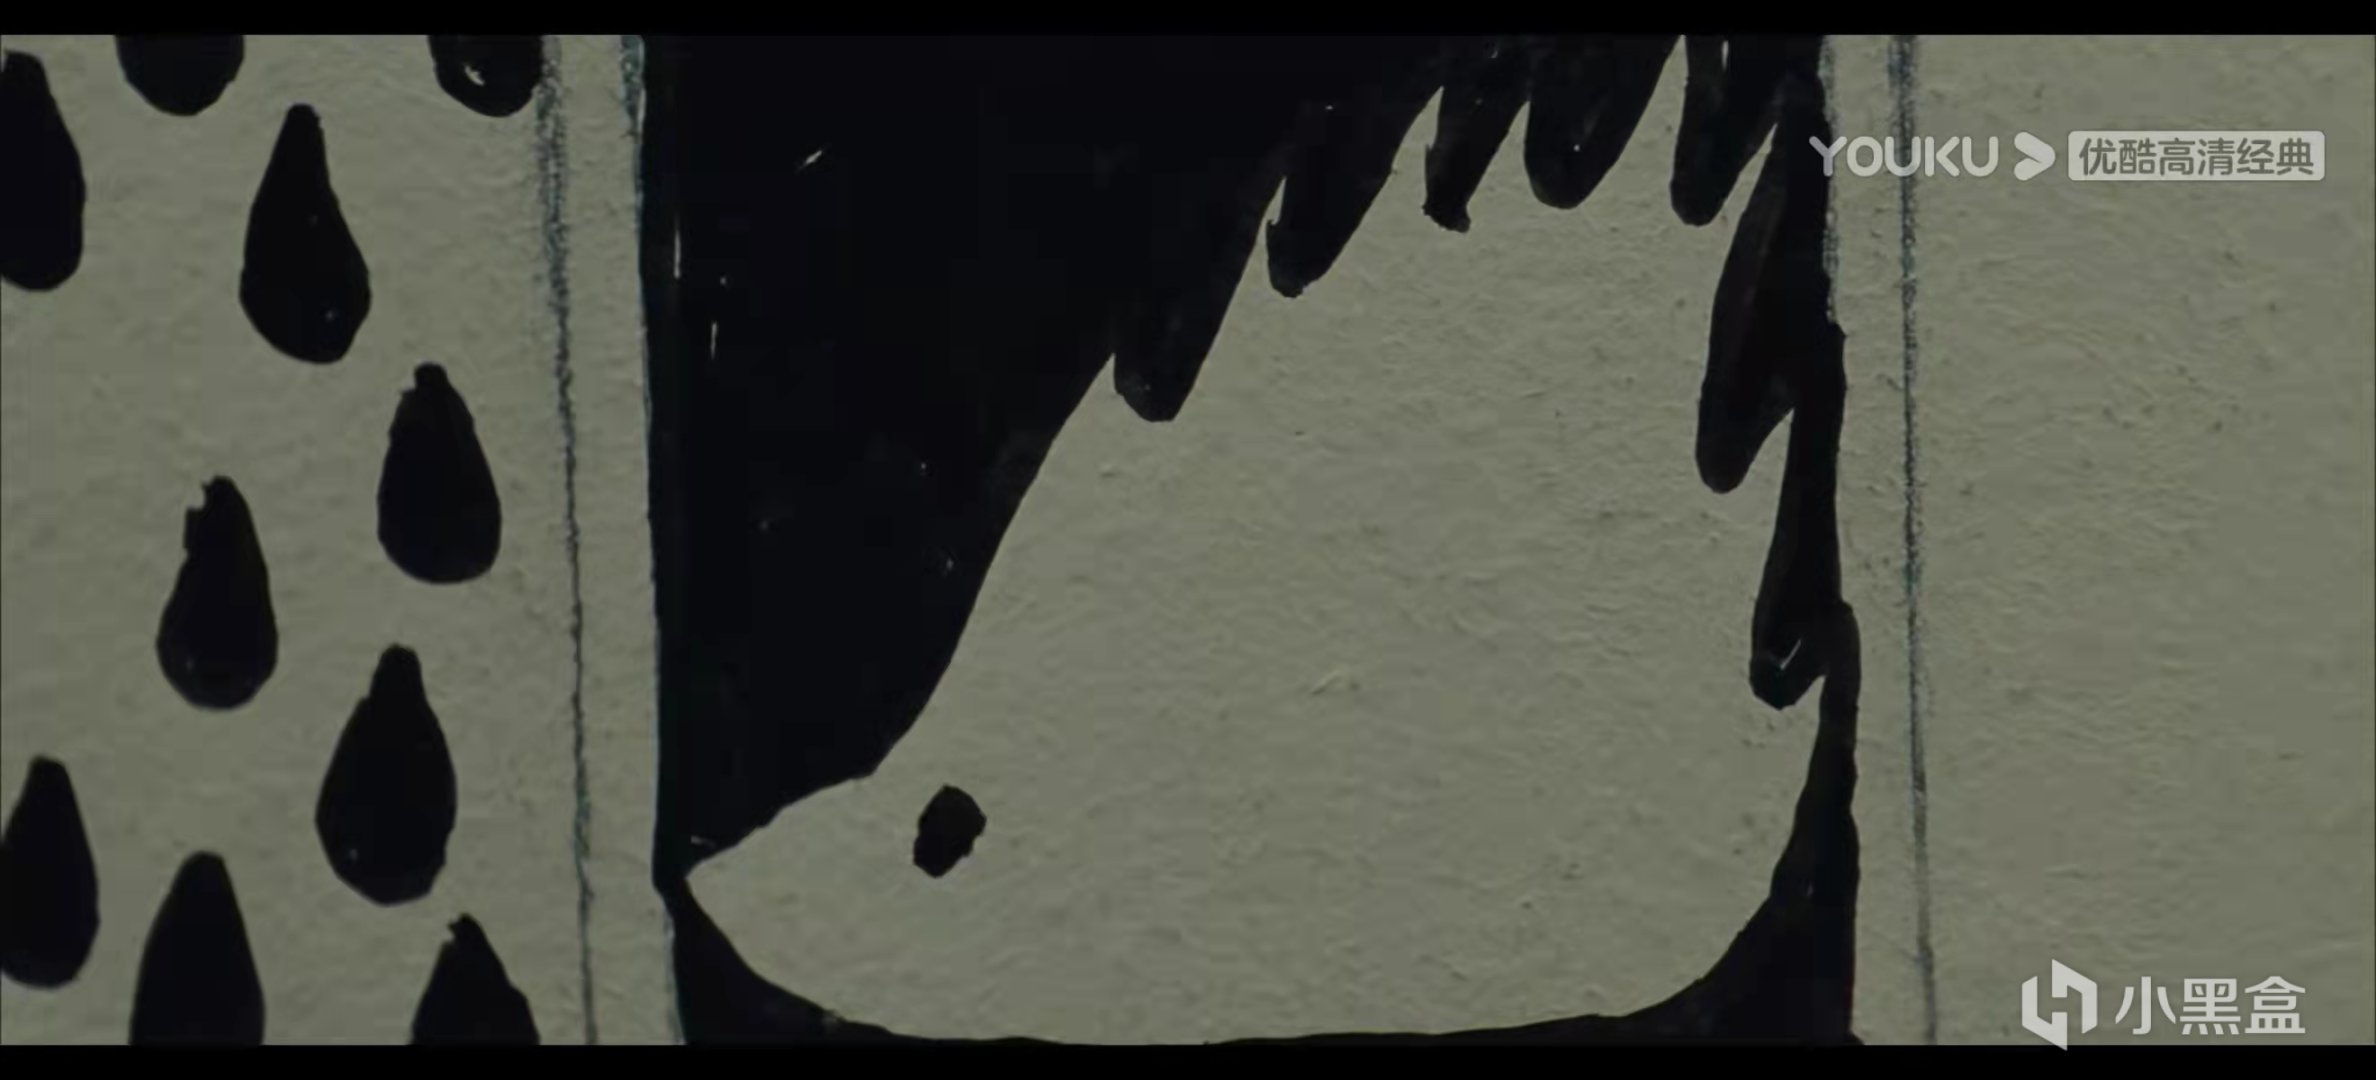 【影视动漫】刺猬少女的死亡倒计时计划——电影《刺猬的优雅》中的帕洛玛视角-第39张